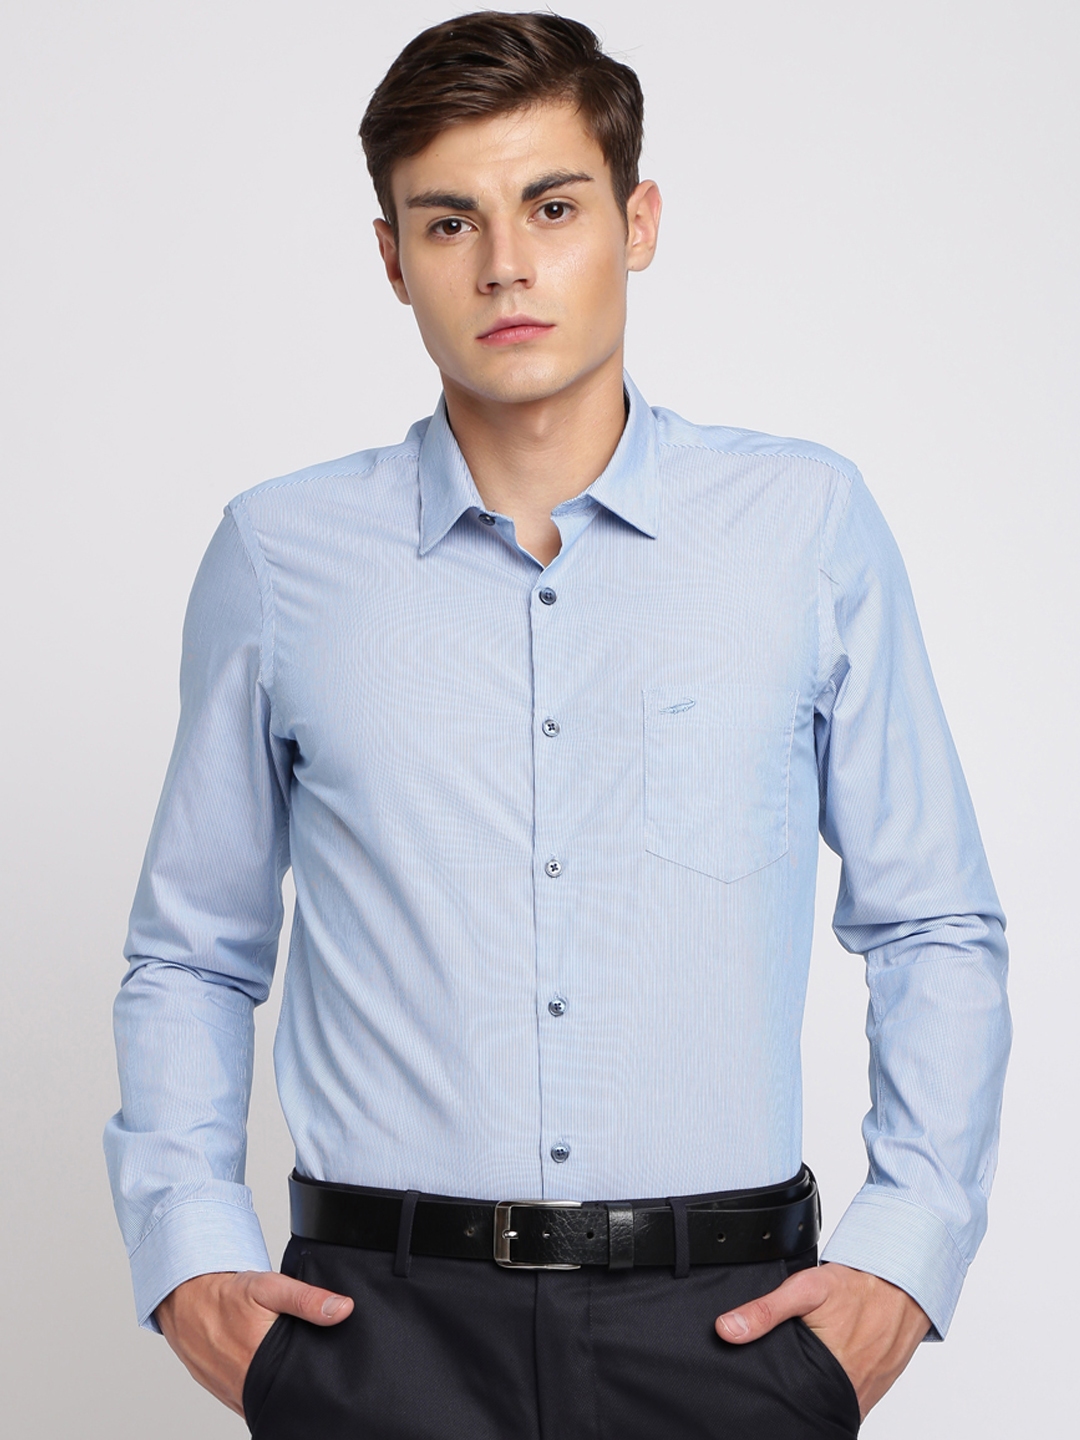 Buy Crocodile Men Blue Slim Fit Striped Formal Shirt - Shirts for Men ...